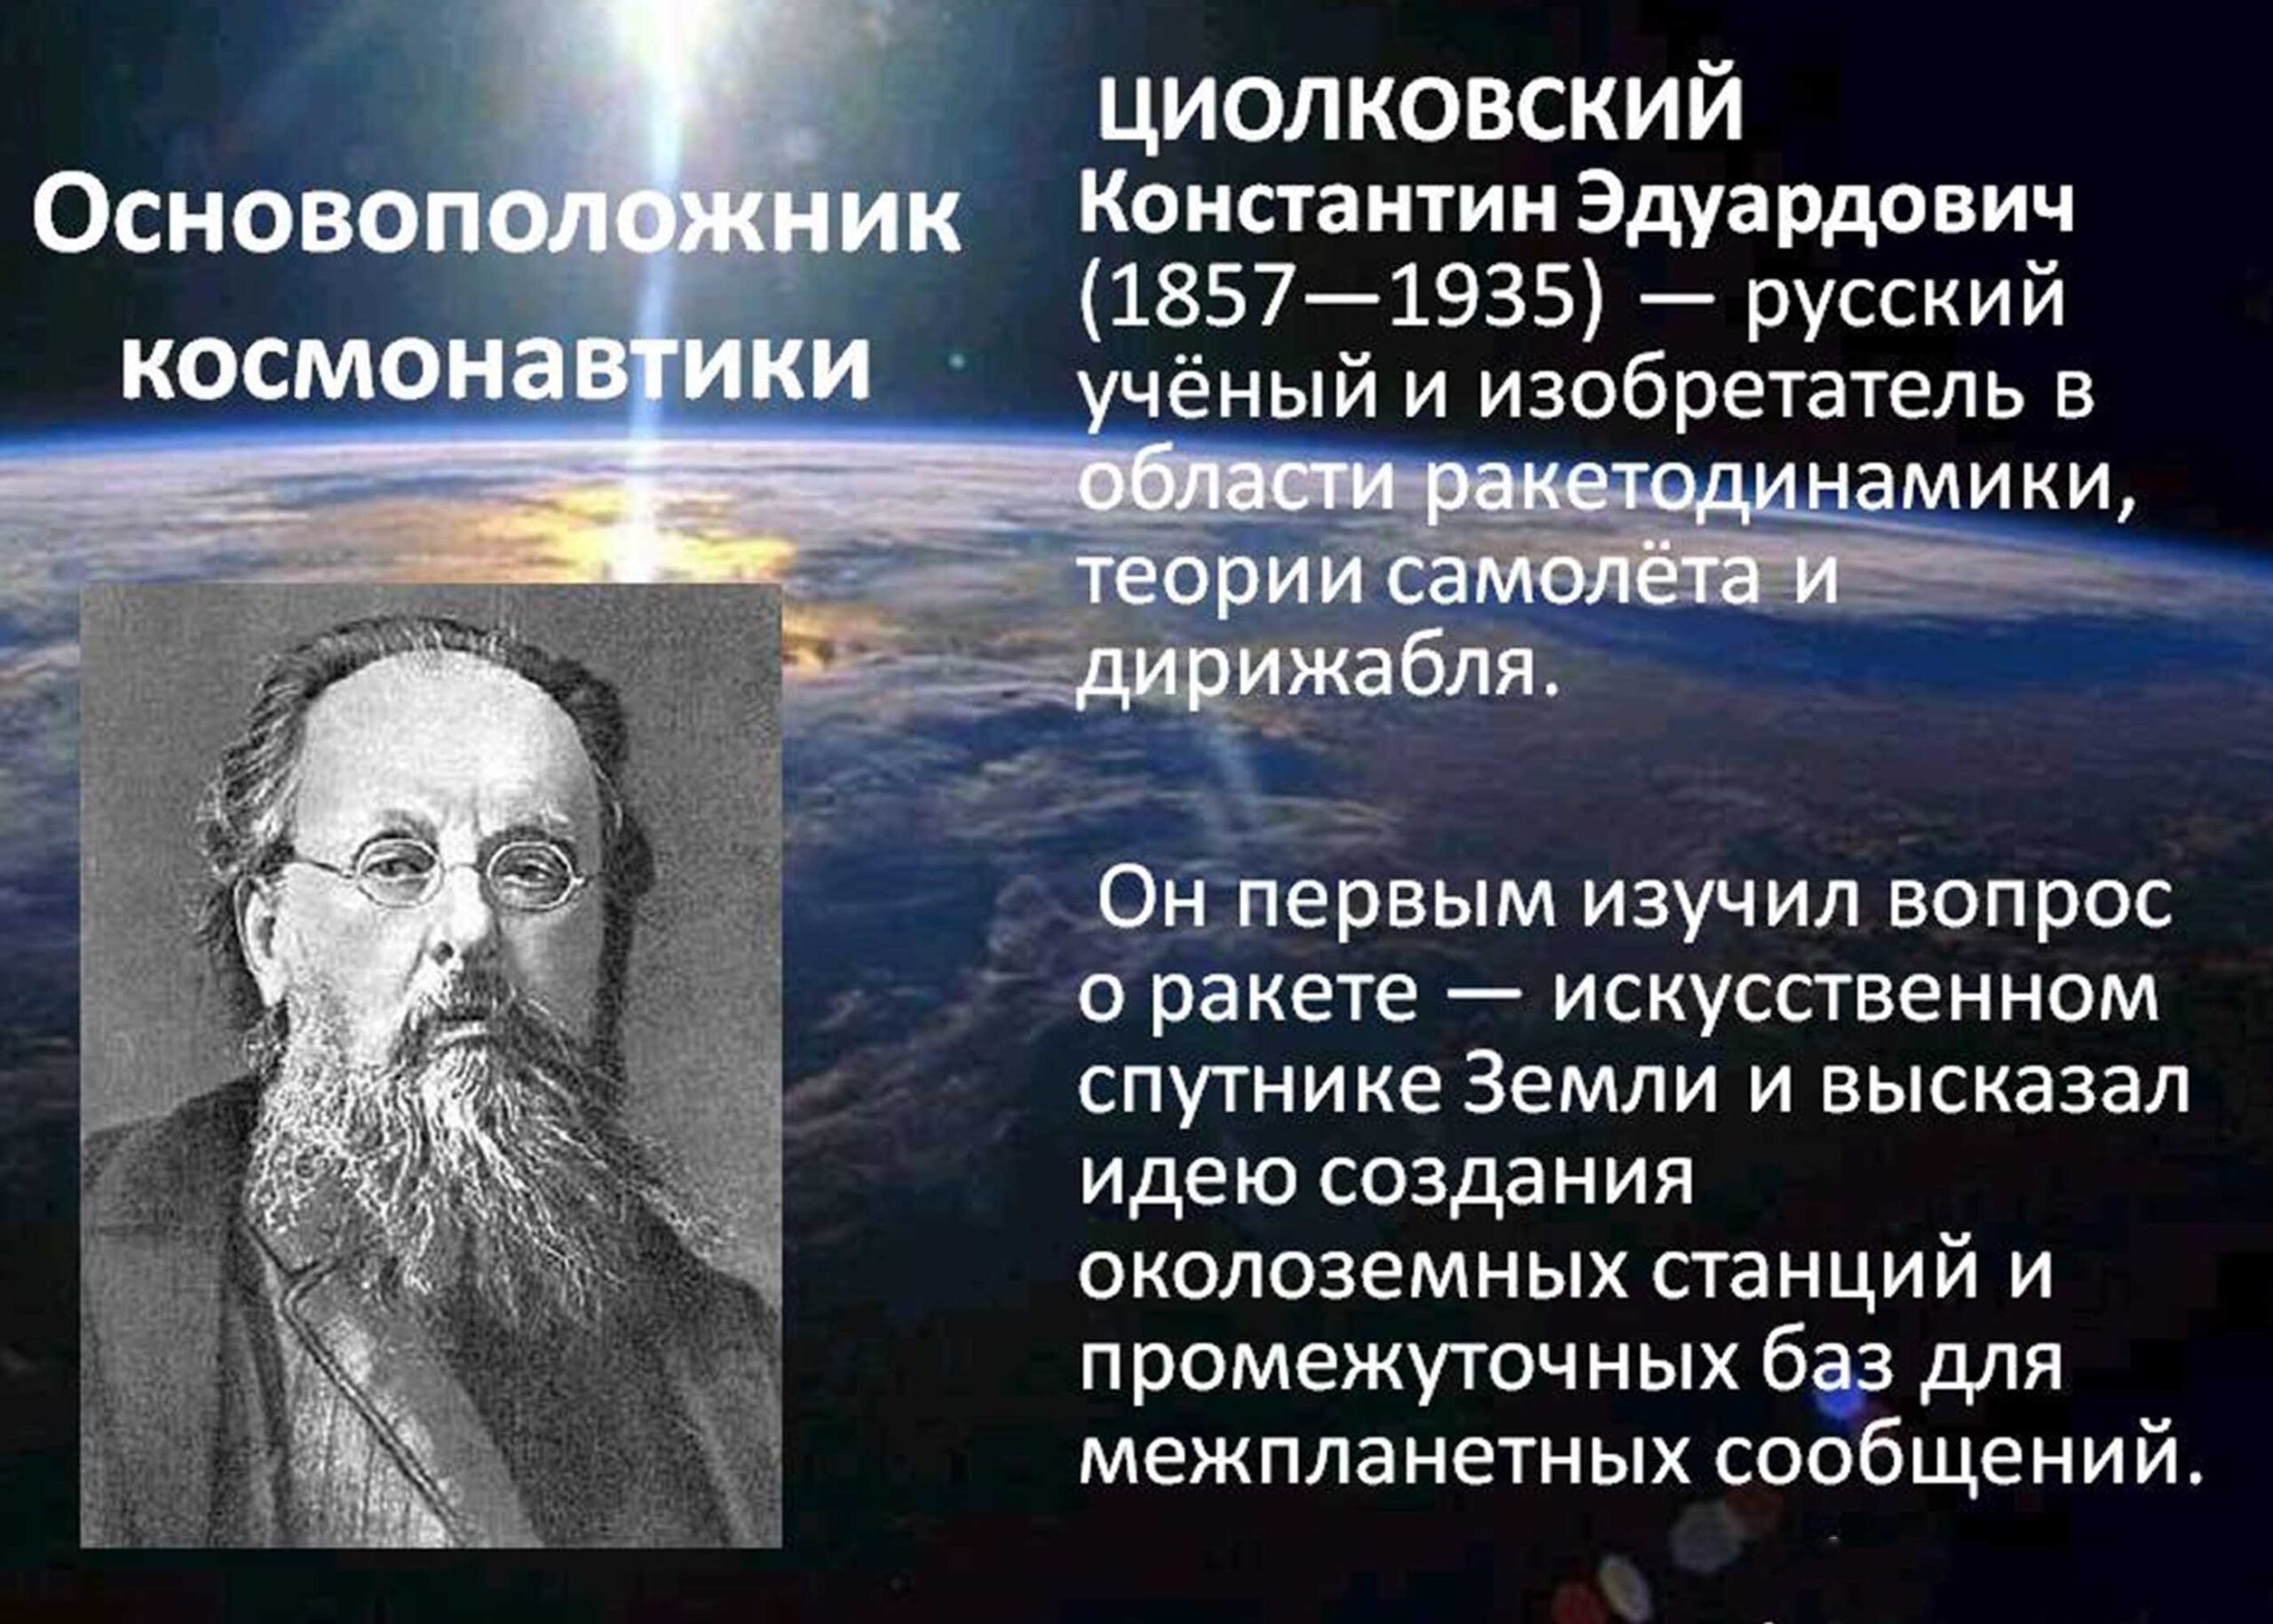 Русский ученый – Константин Эдуардович Циолковский.